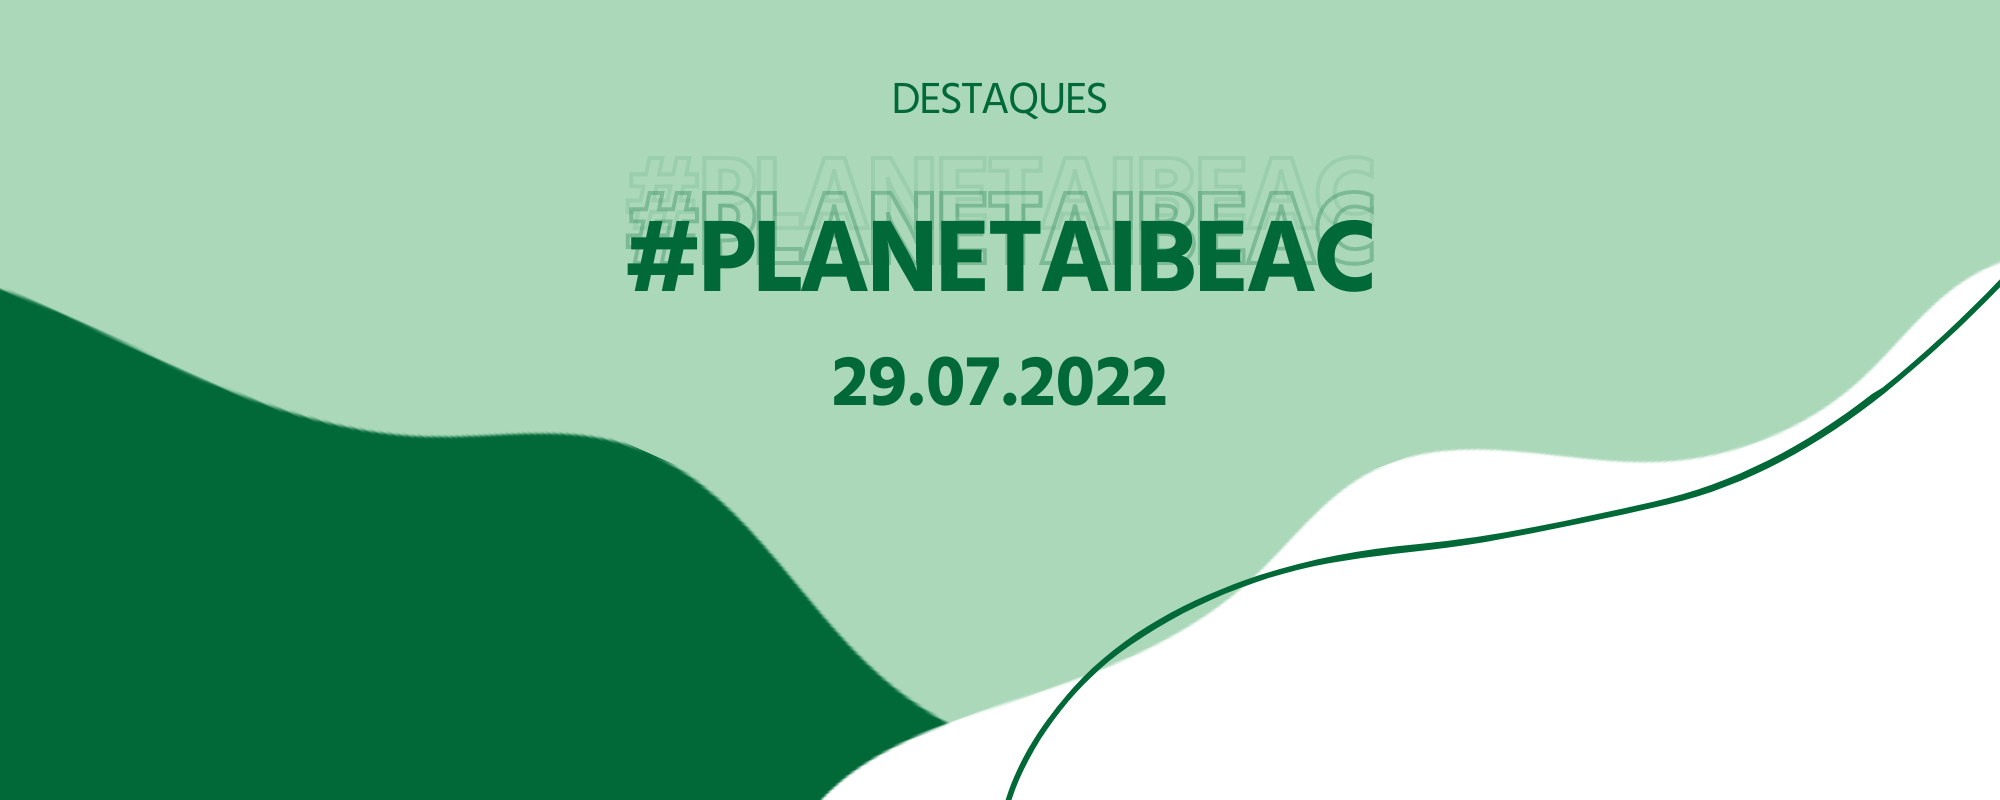 Destaques #Planetaibeac 29.07.2022